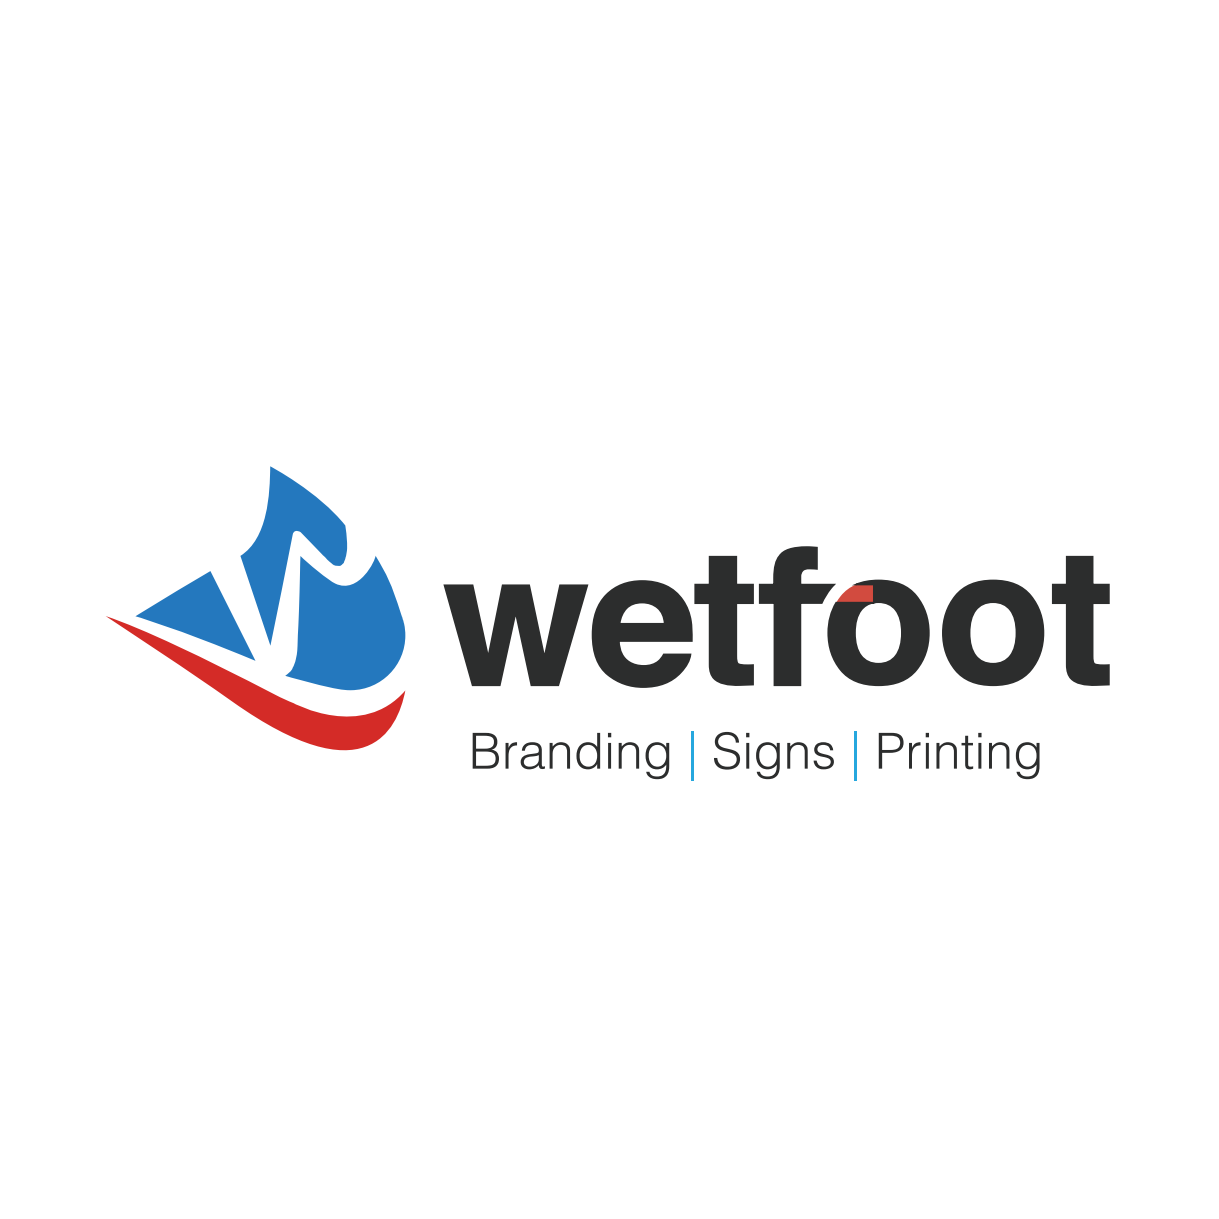 Wetfoot